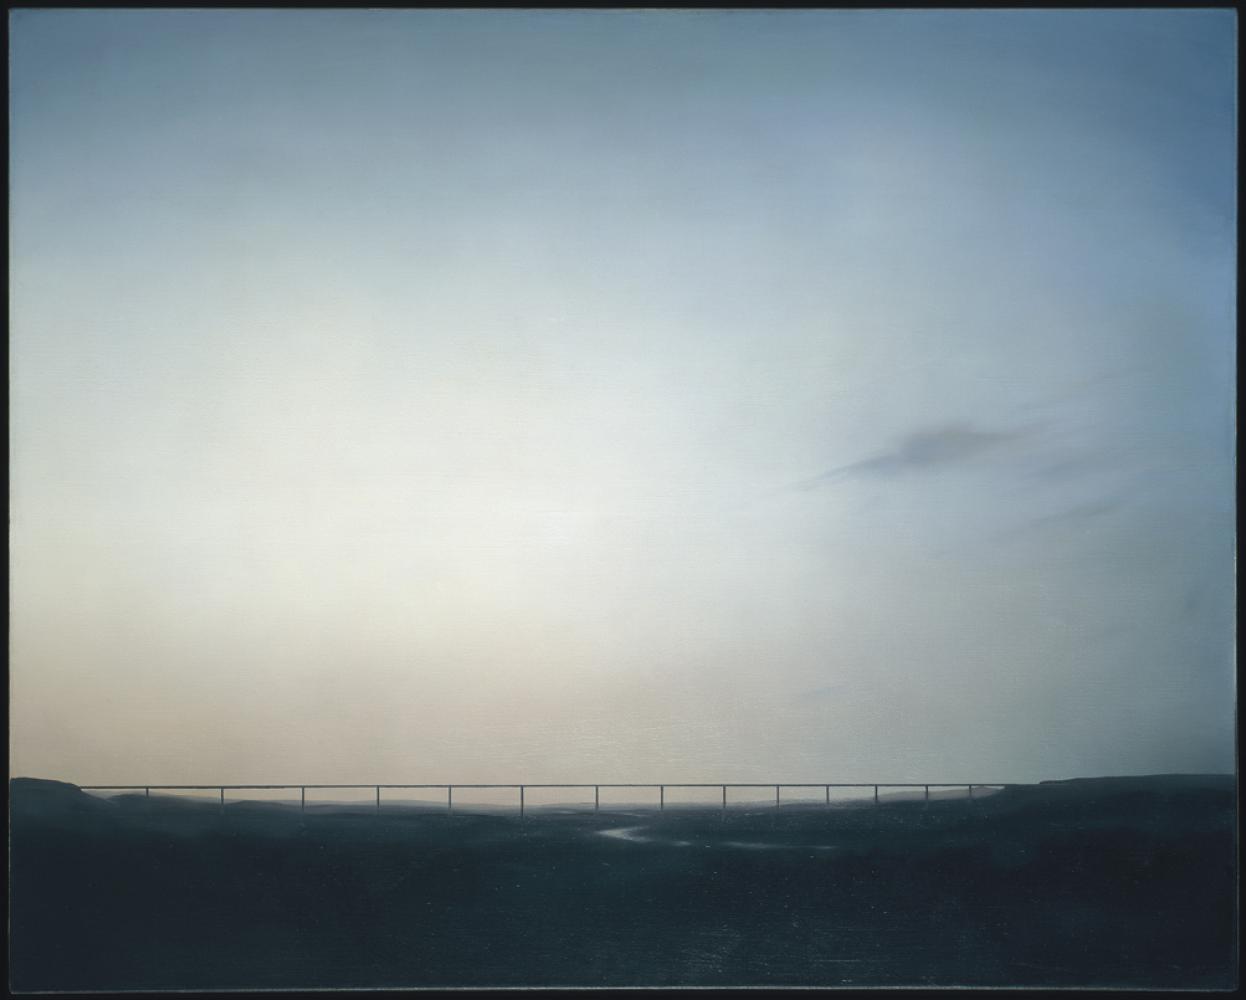 Gerhard Richter "Ruhrtalbrücke", 1969